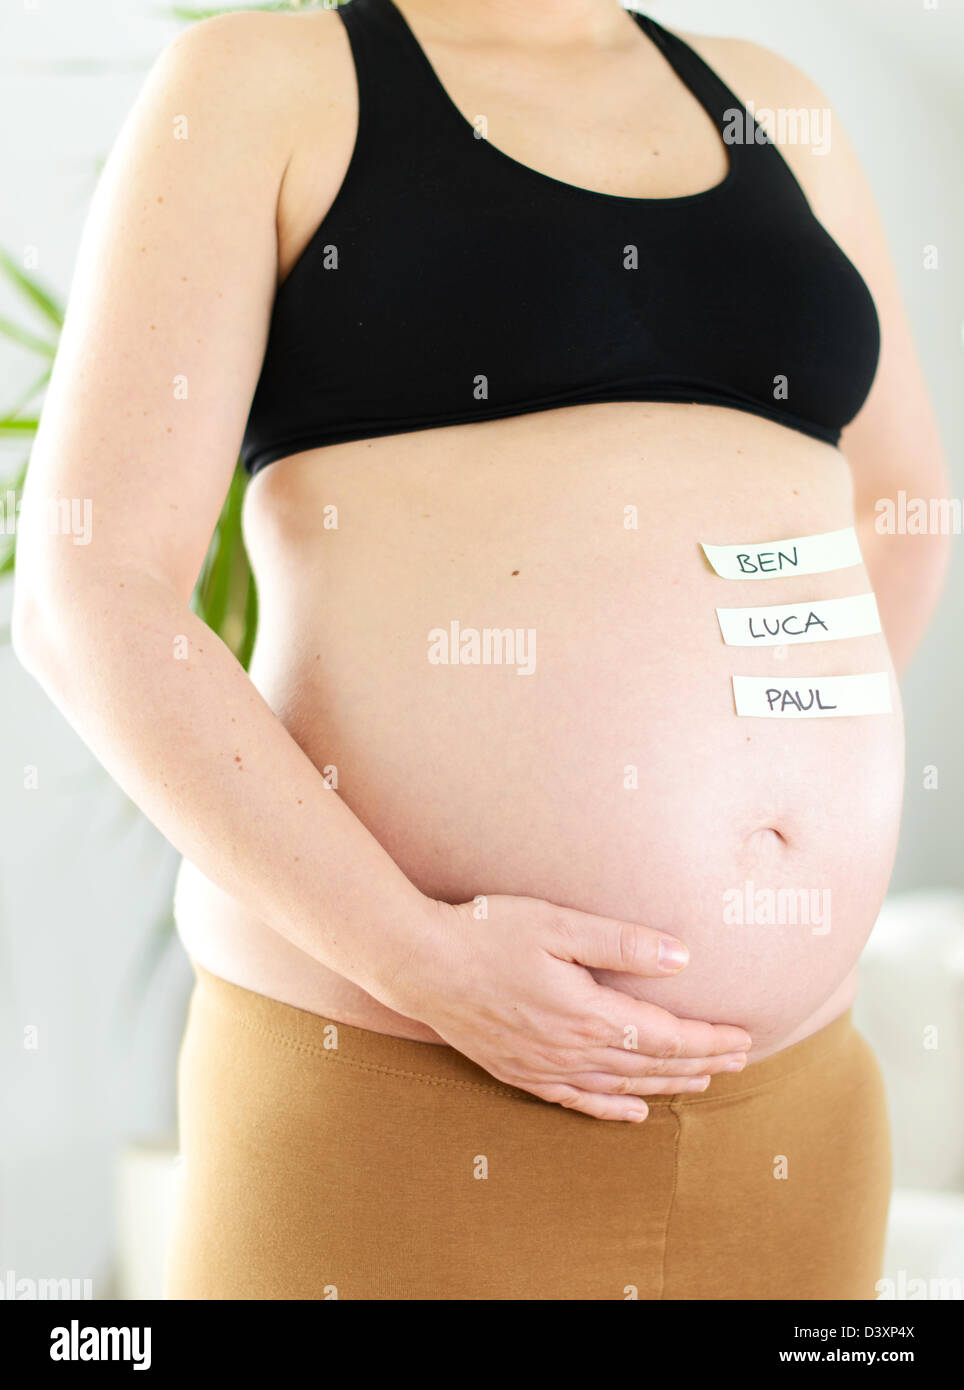 El popular joven alemán nombres en un bebé el vientre de una mujer embarazada. Foto de stock